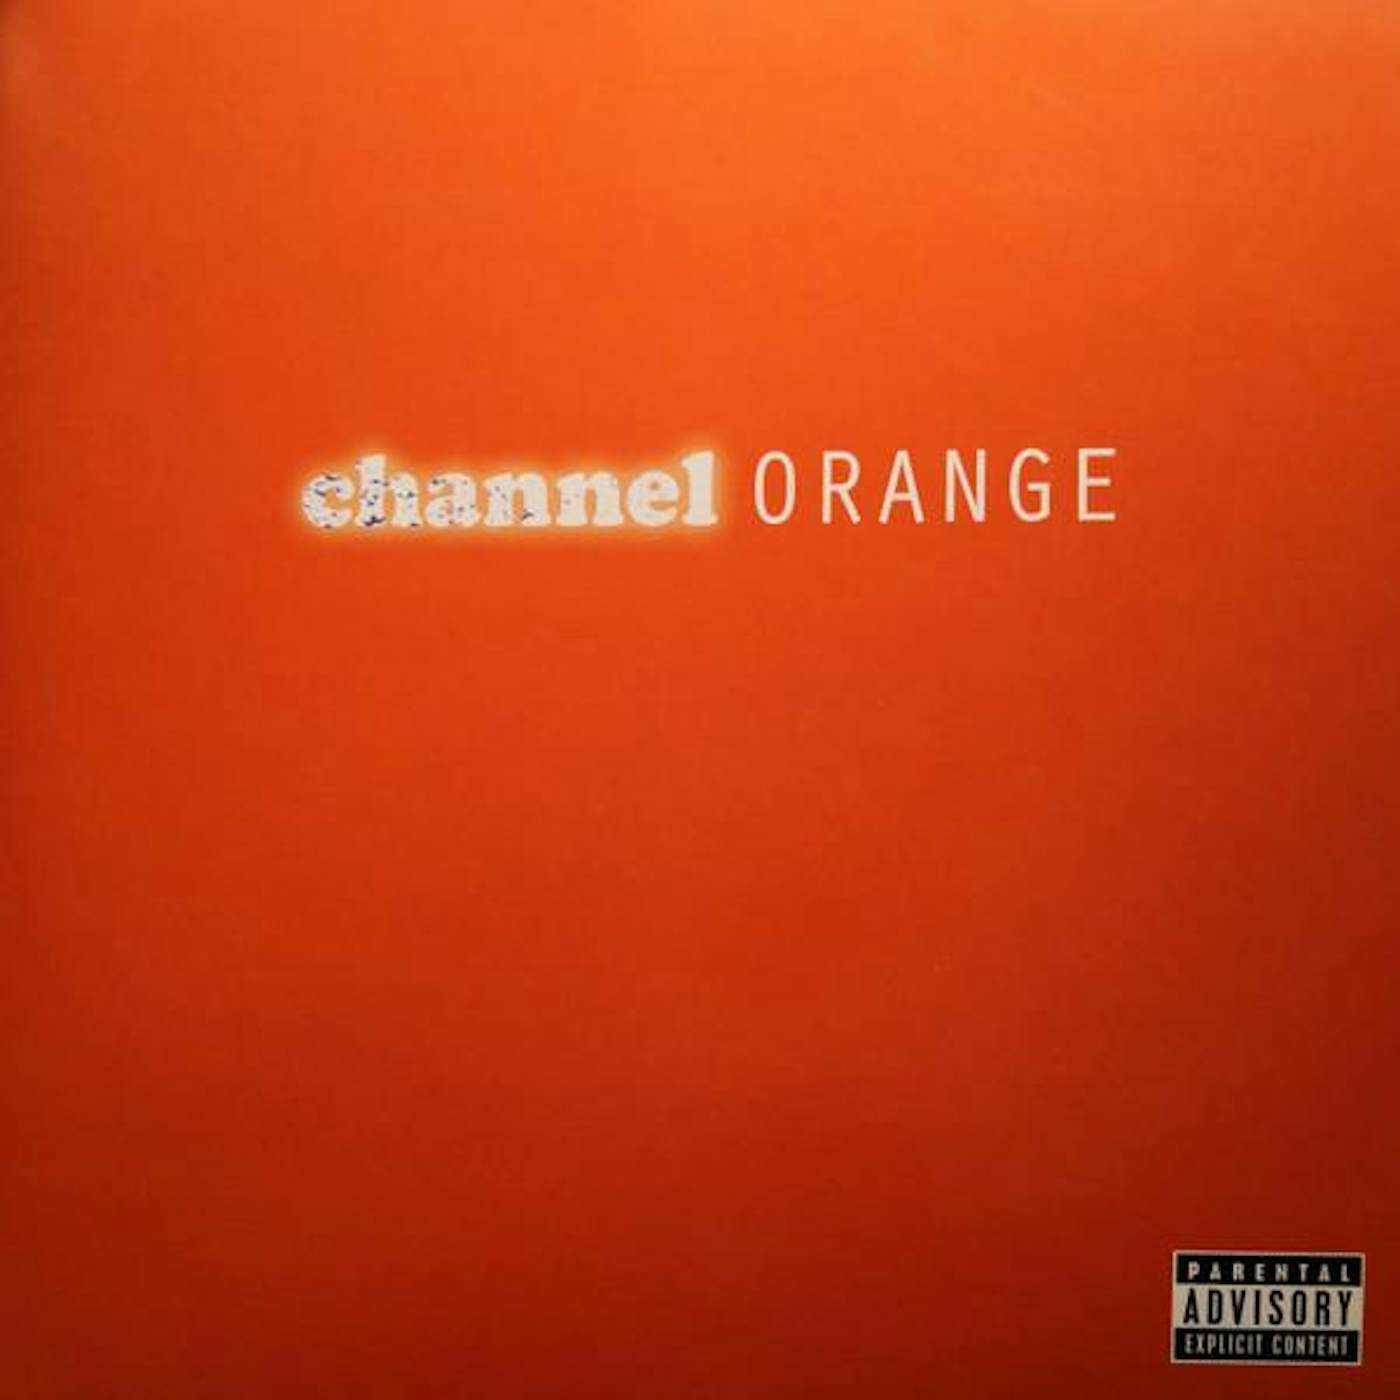 Frank Ocean CHANNEL ORANGE CD